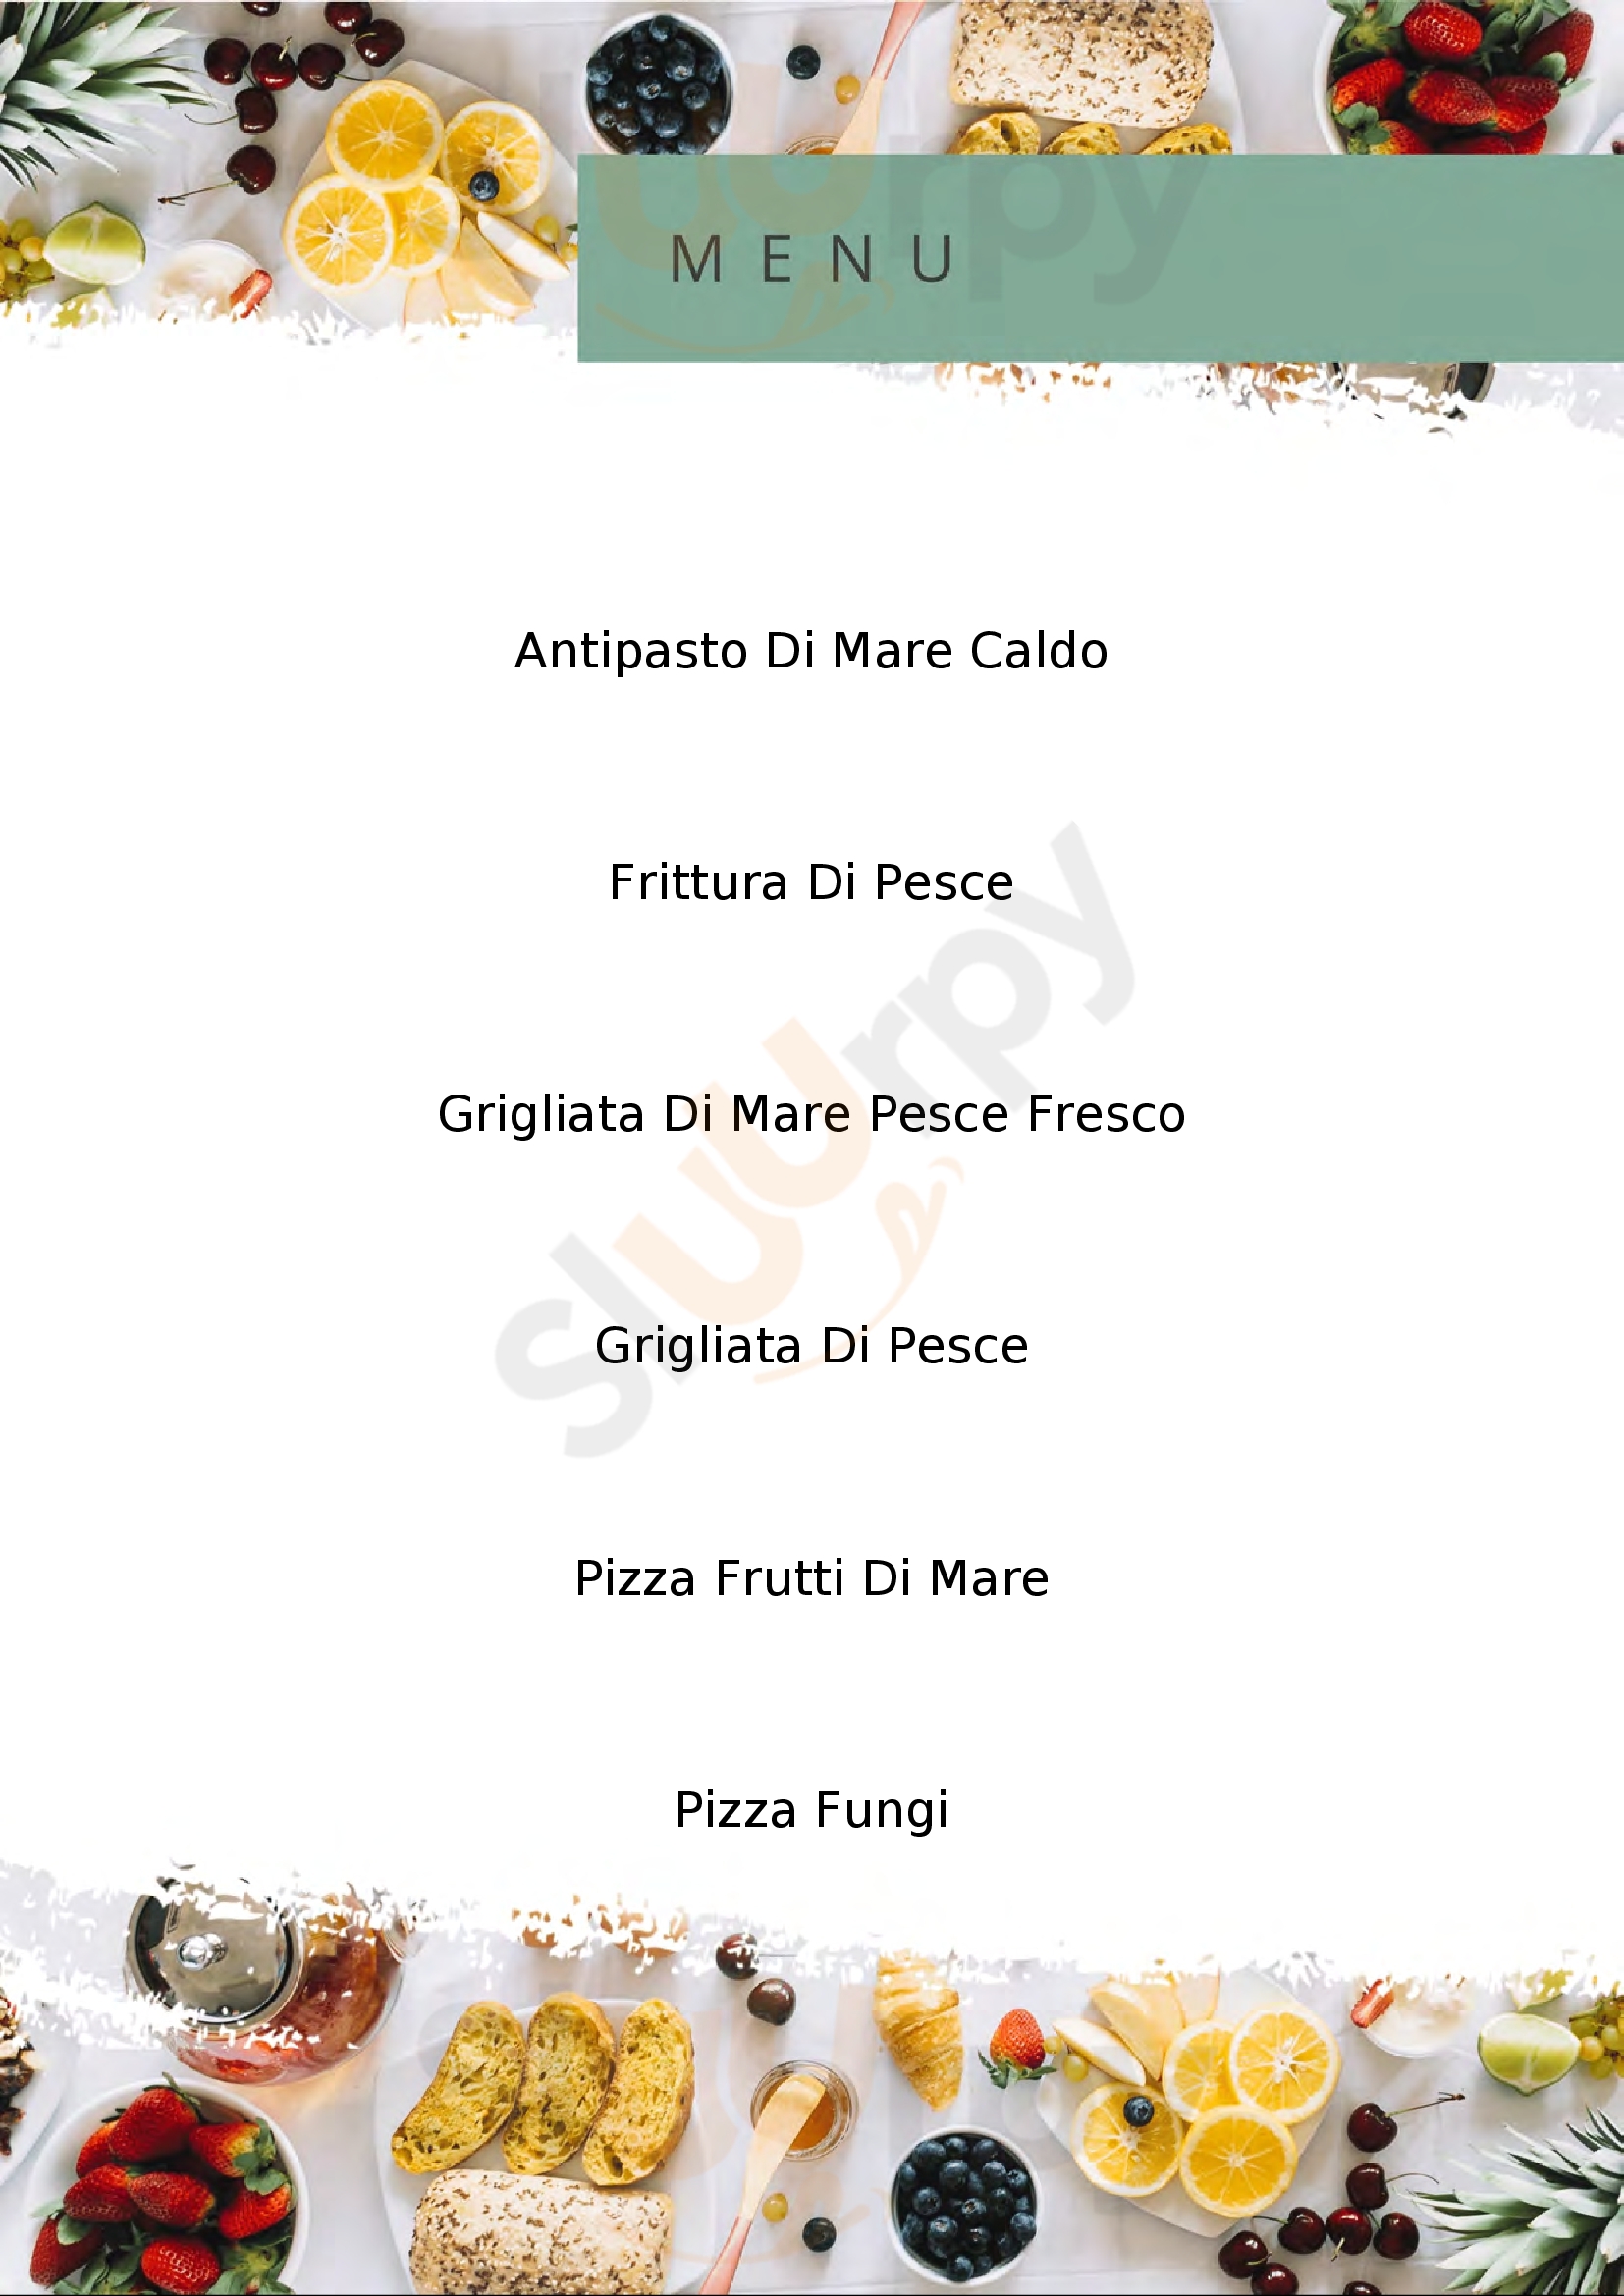 My Dream Ristorante Pizzeria Piombino menù 1 pagina